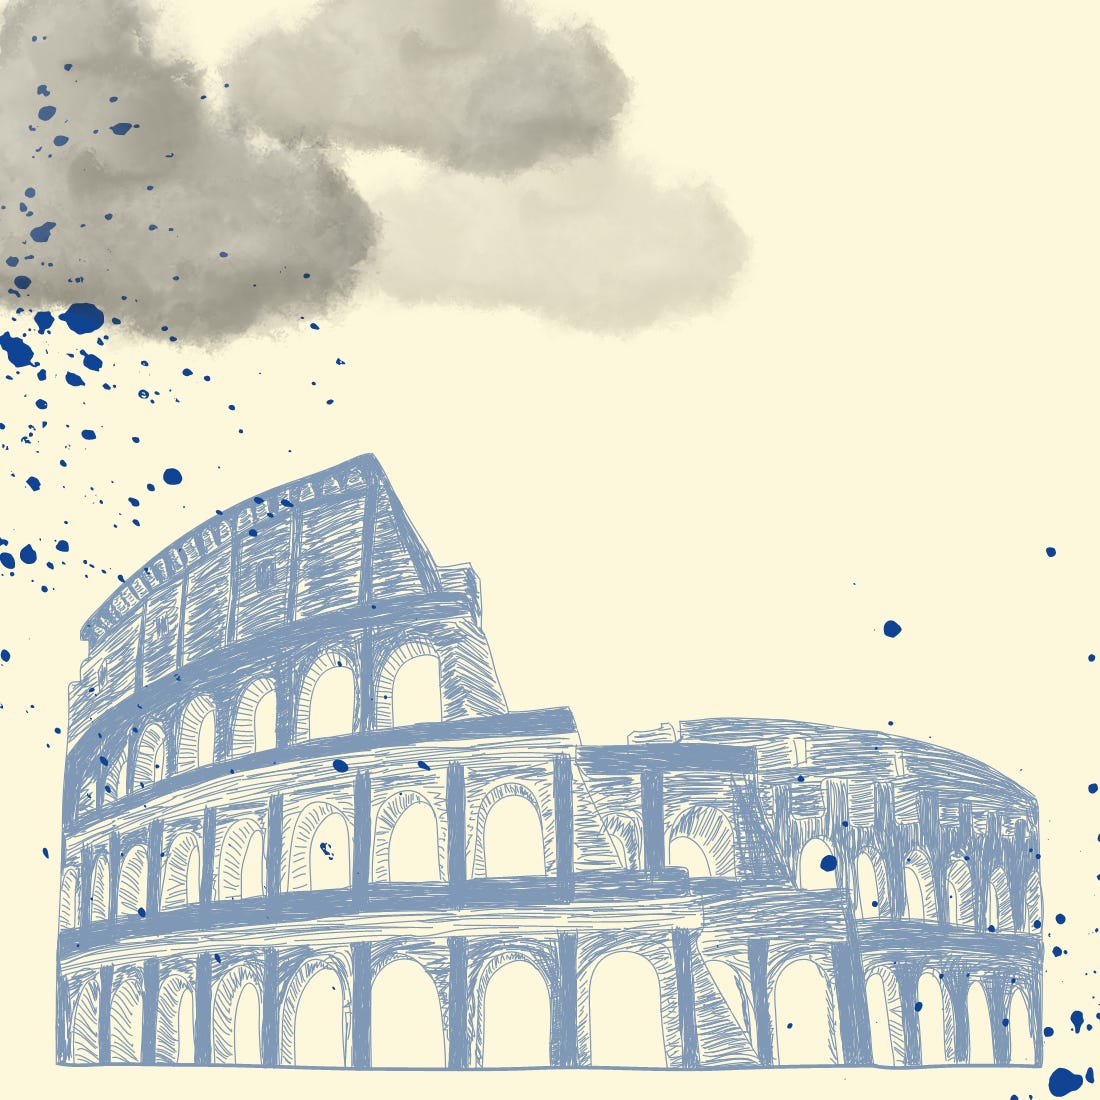 Desenho do Coliseu em bico de pena, ao fundo, nuvens e respingos de tinta